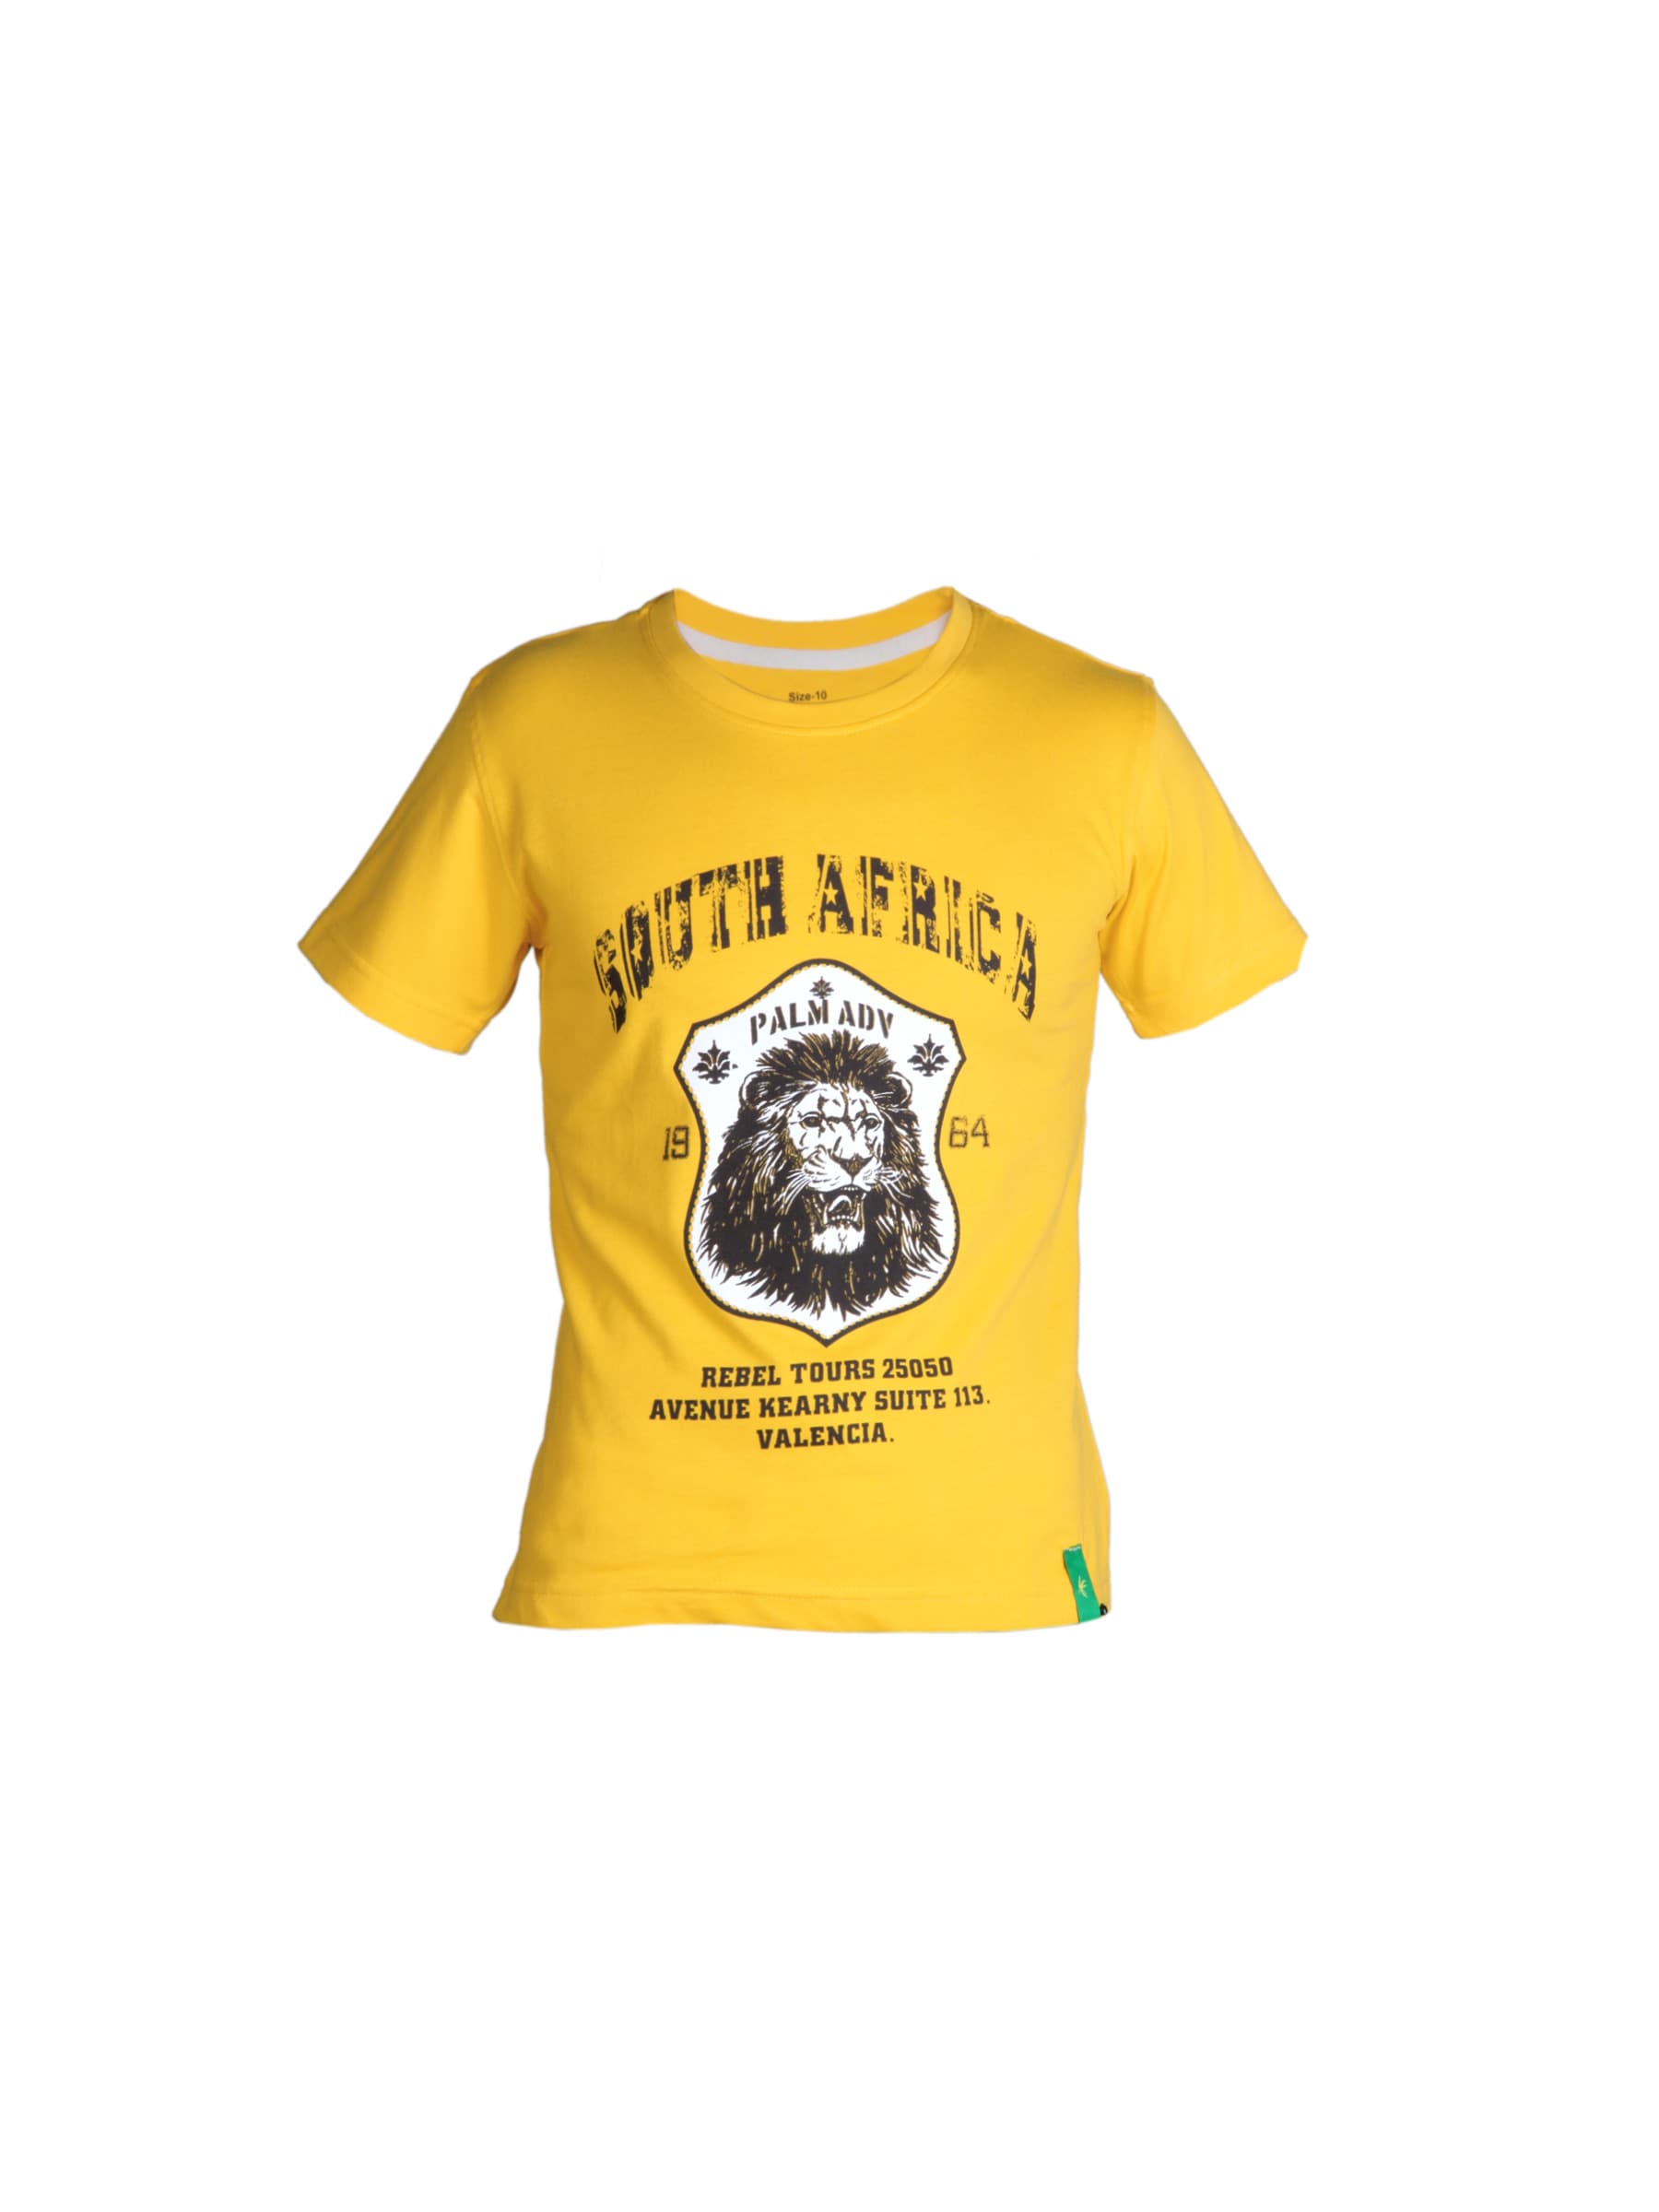 Palm Tree Boys Printed Yellow T-Shirt